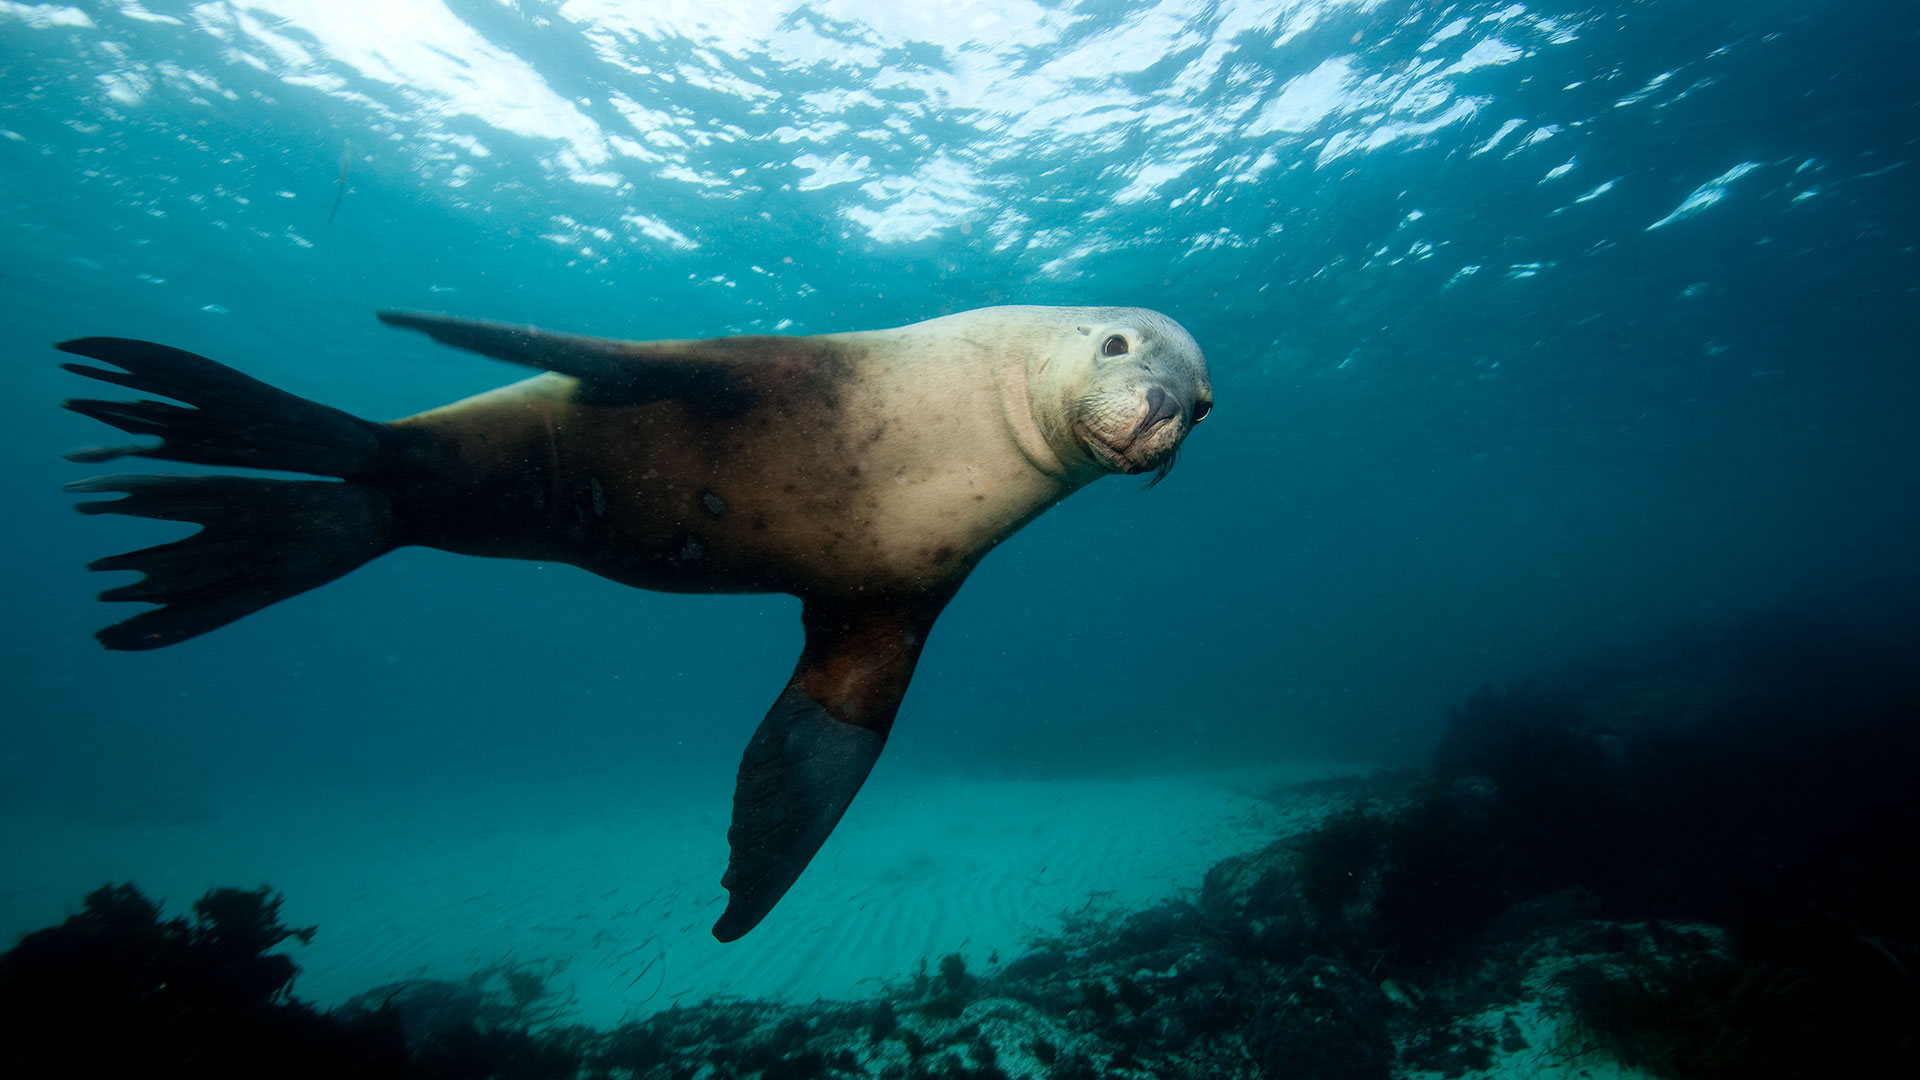 Las focas no tienen un sonar como las ballenas por lo tanto no pueden ecolocalizar a sus presa